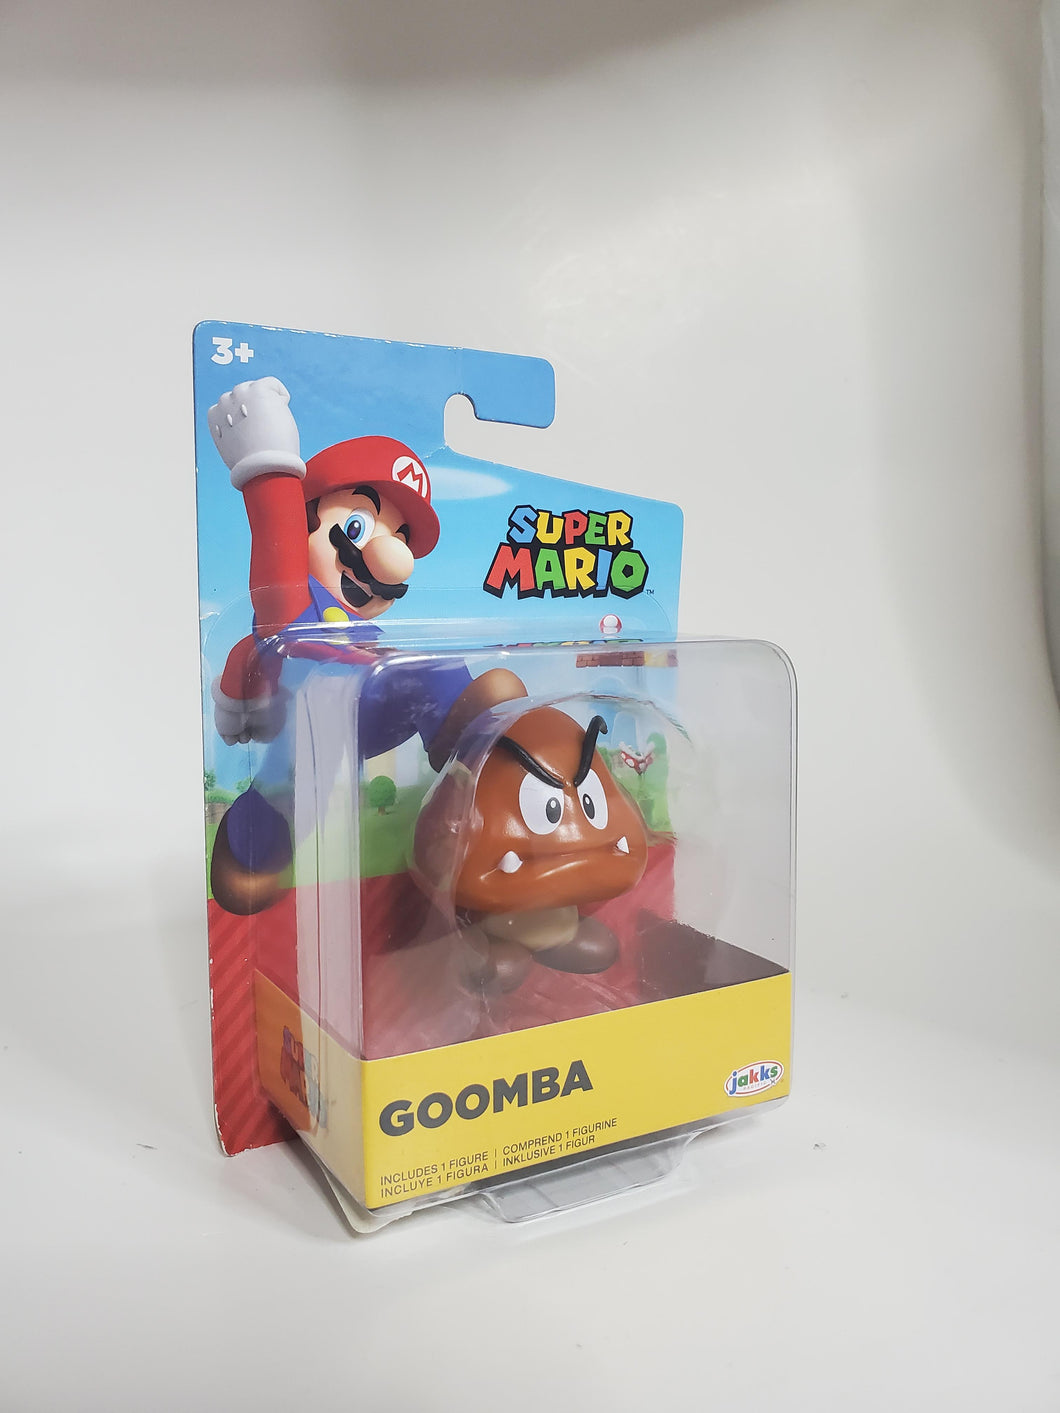 Super Mario Goomba Figure by Jakks